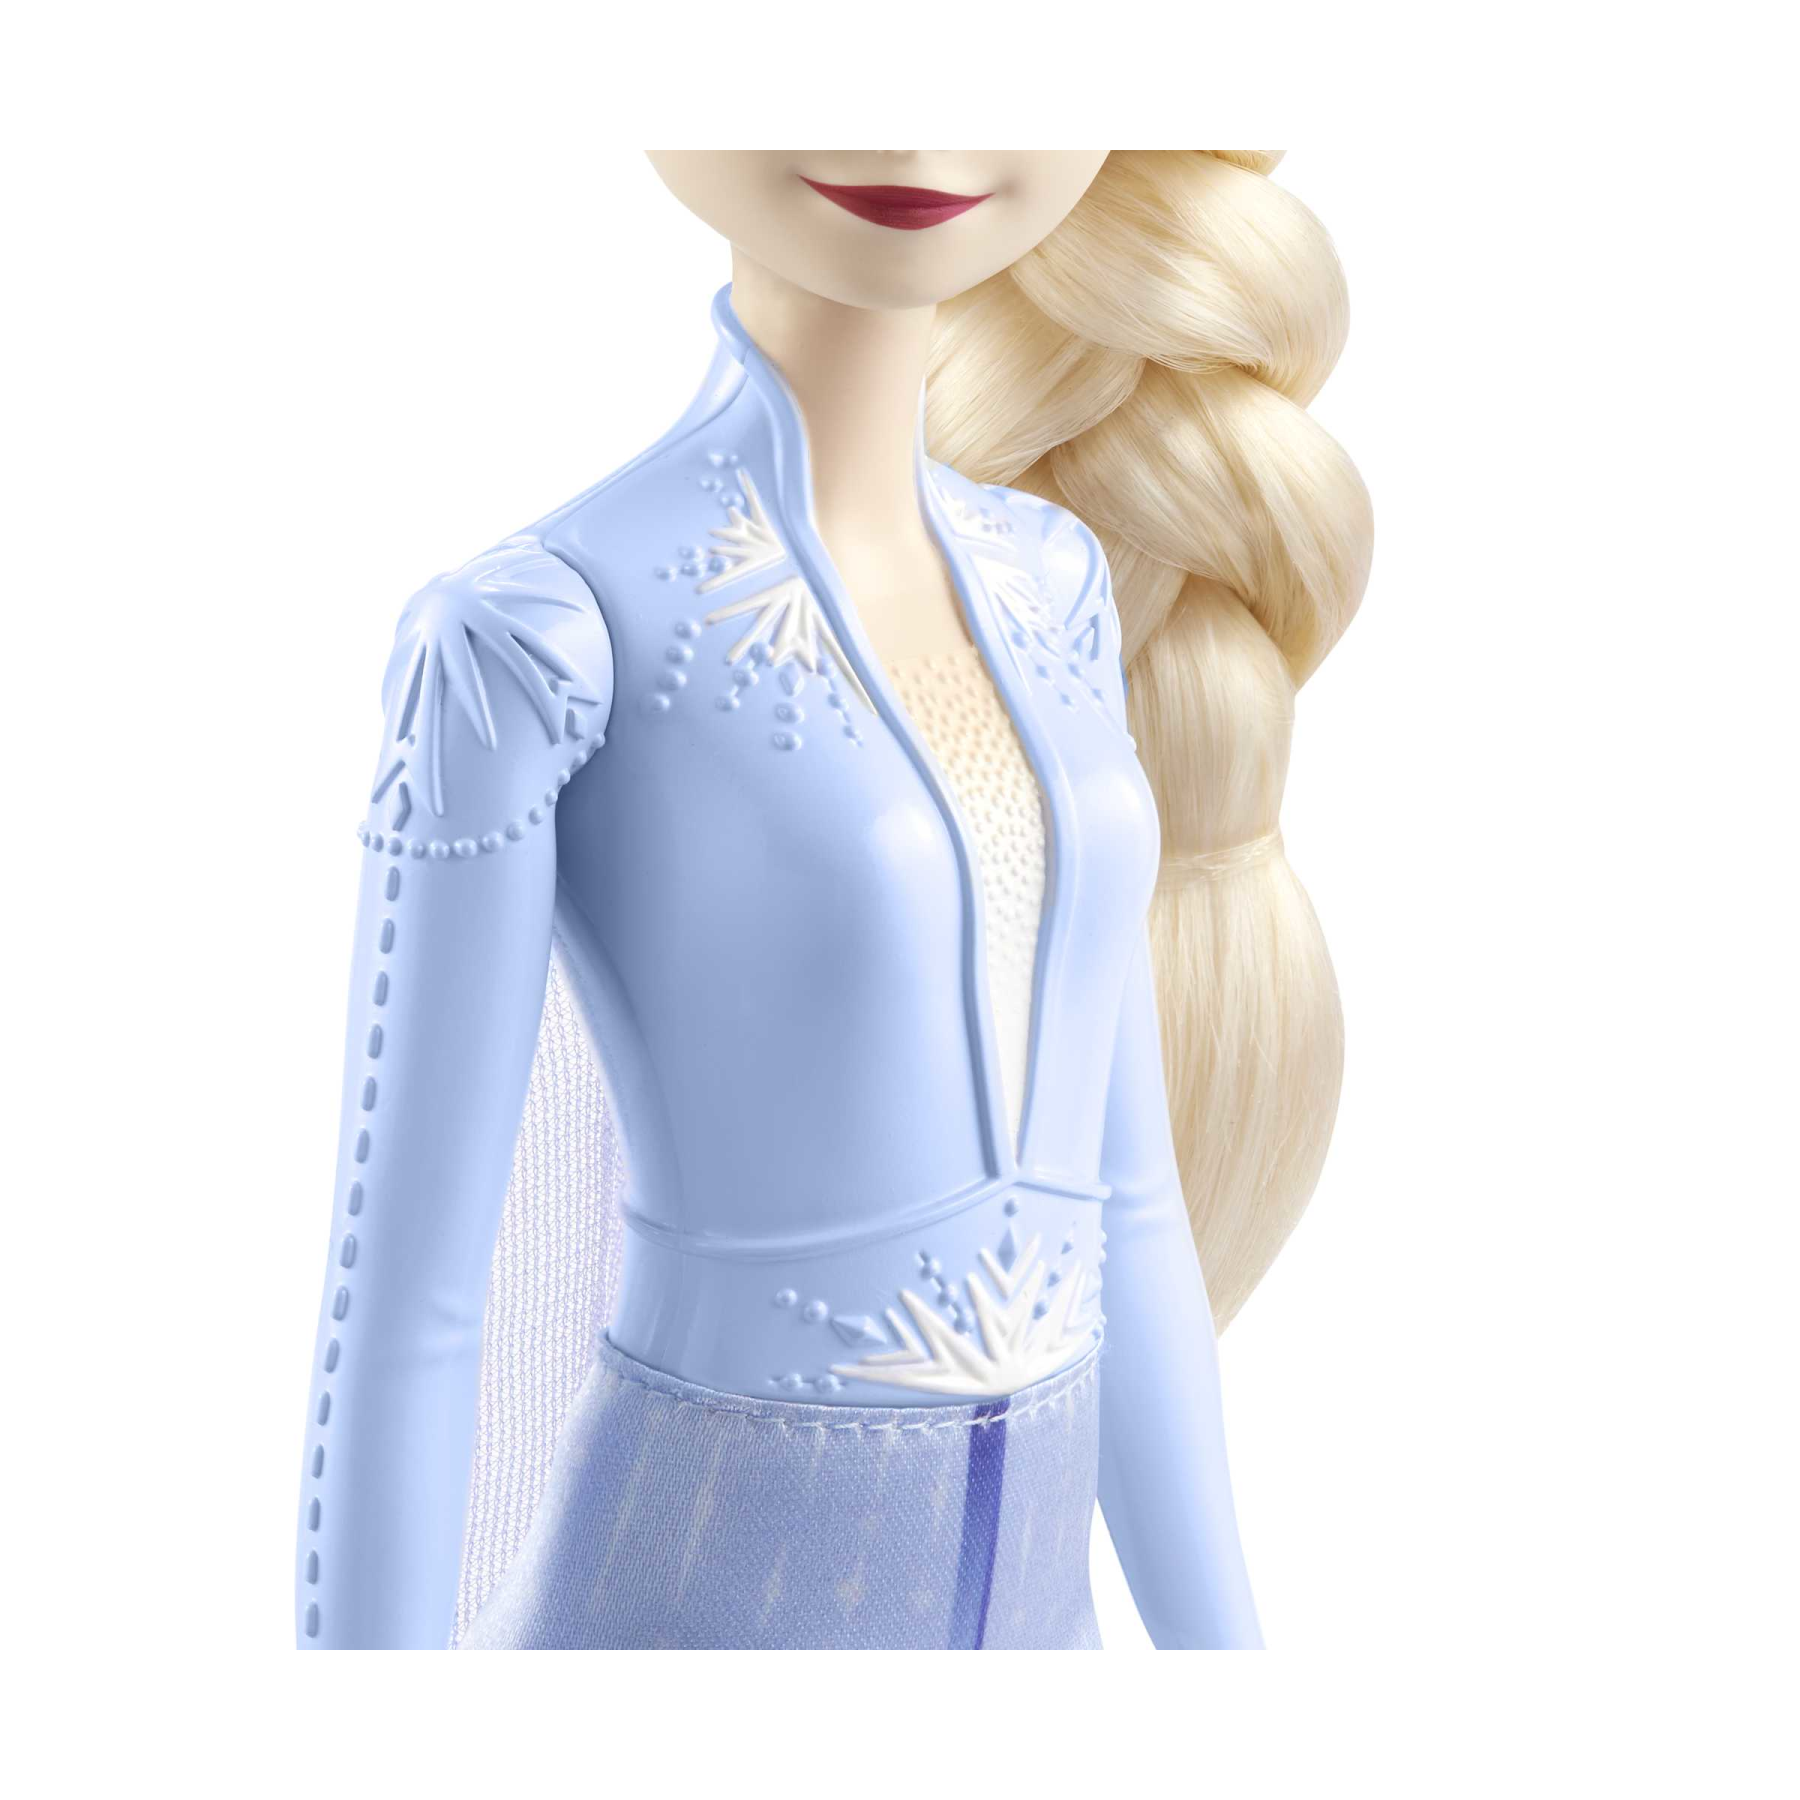 Disney frozen - elsa bambola con abito esclusivo e accessori ispirati ai film disney frozen 2, giocattolo per bambini, 3+ anni, hlw48 - DISNEY PRINCESS, Frozen